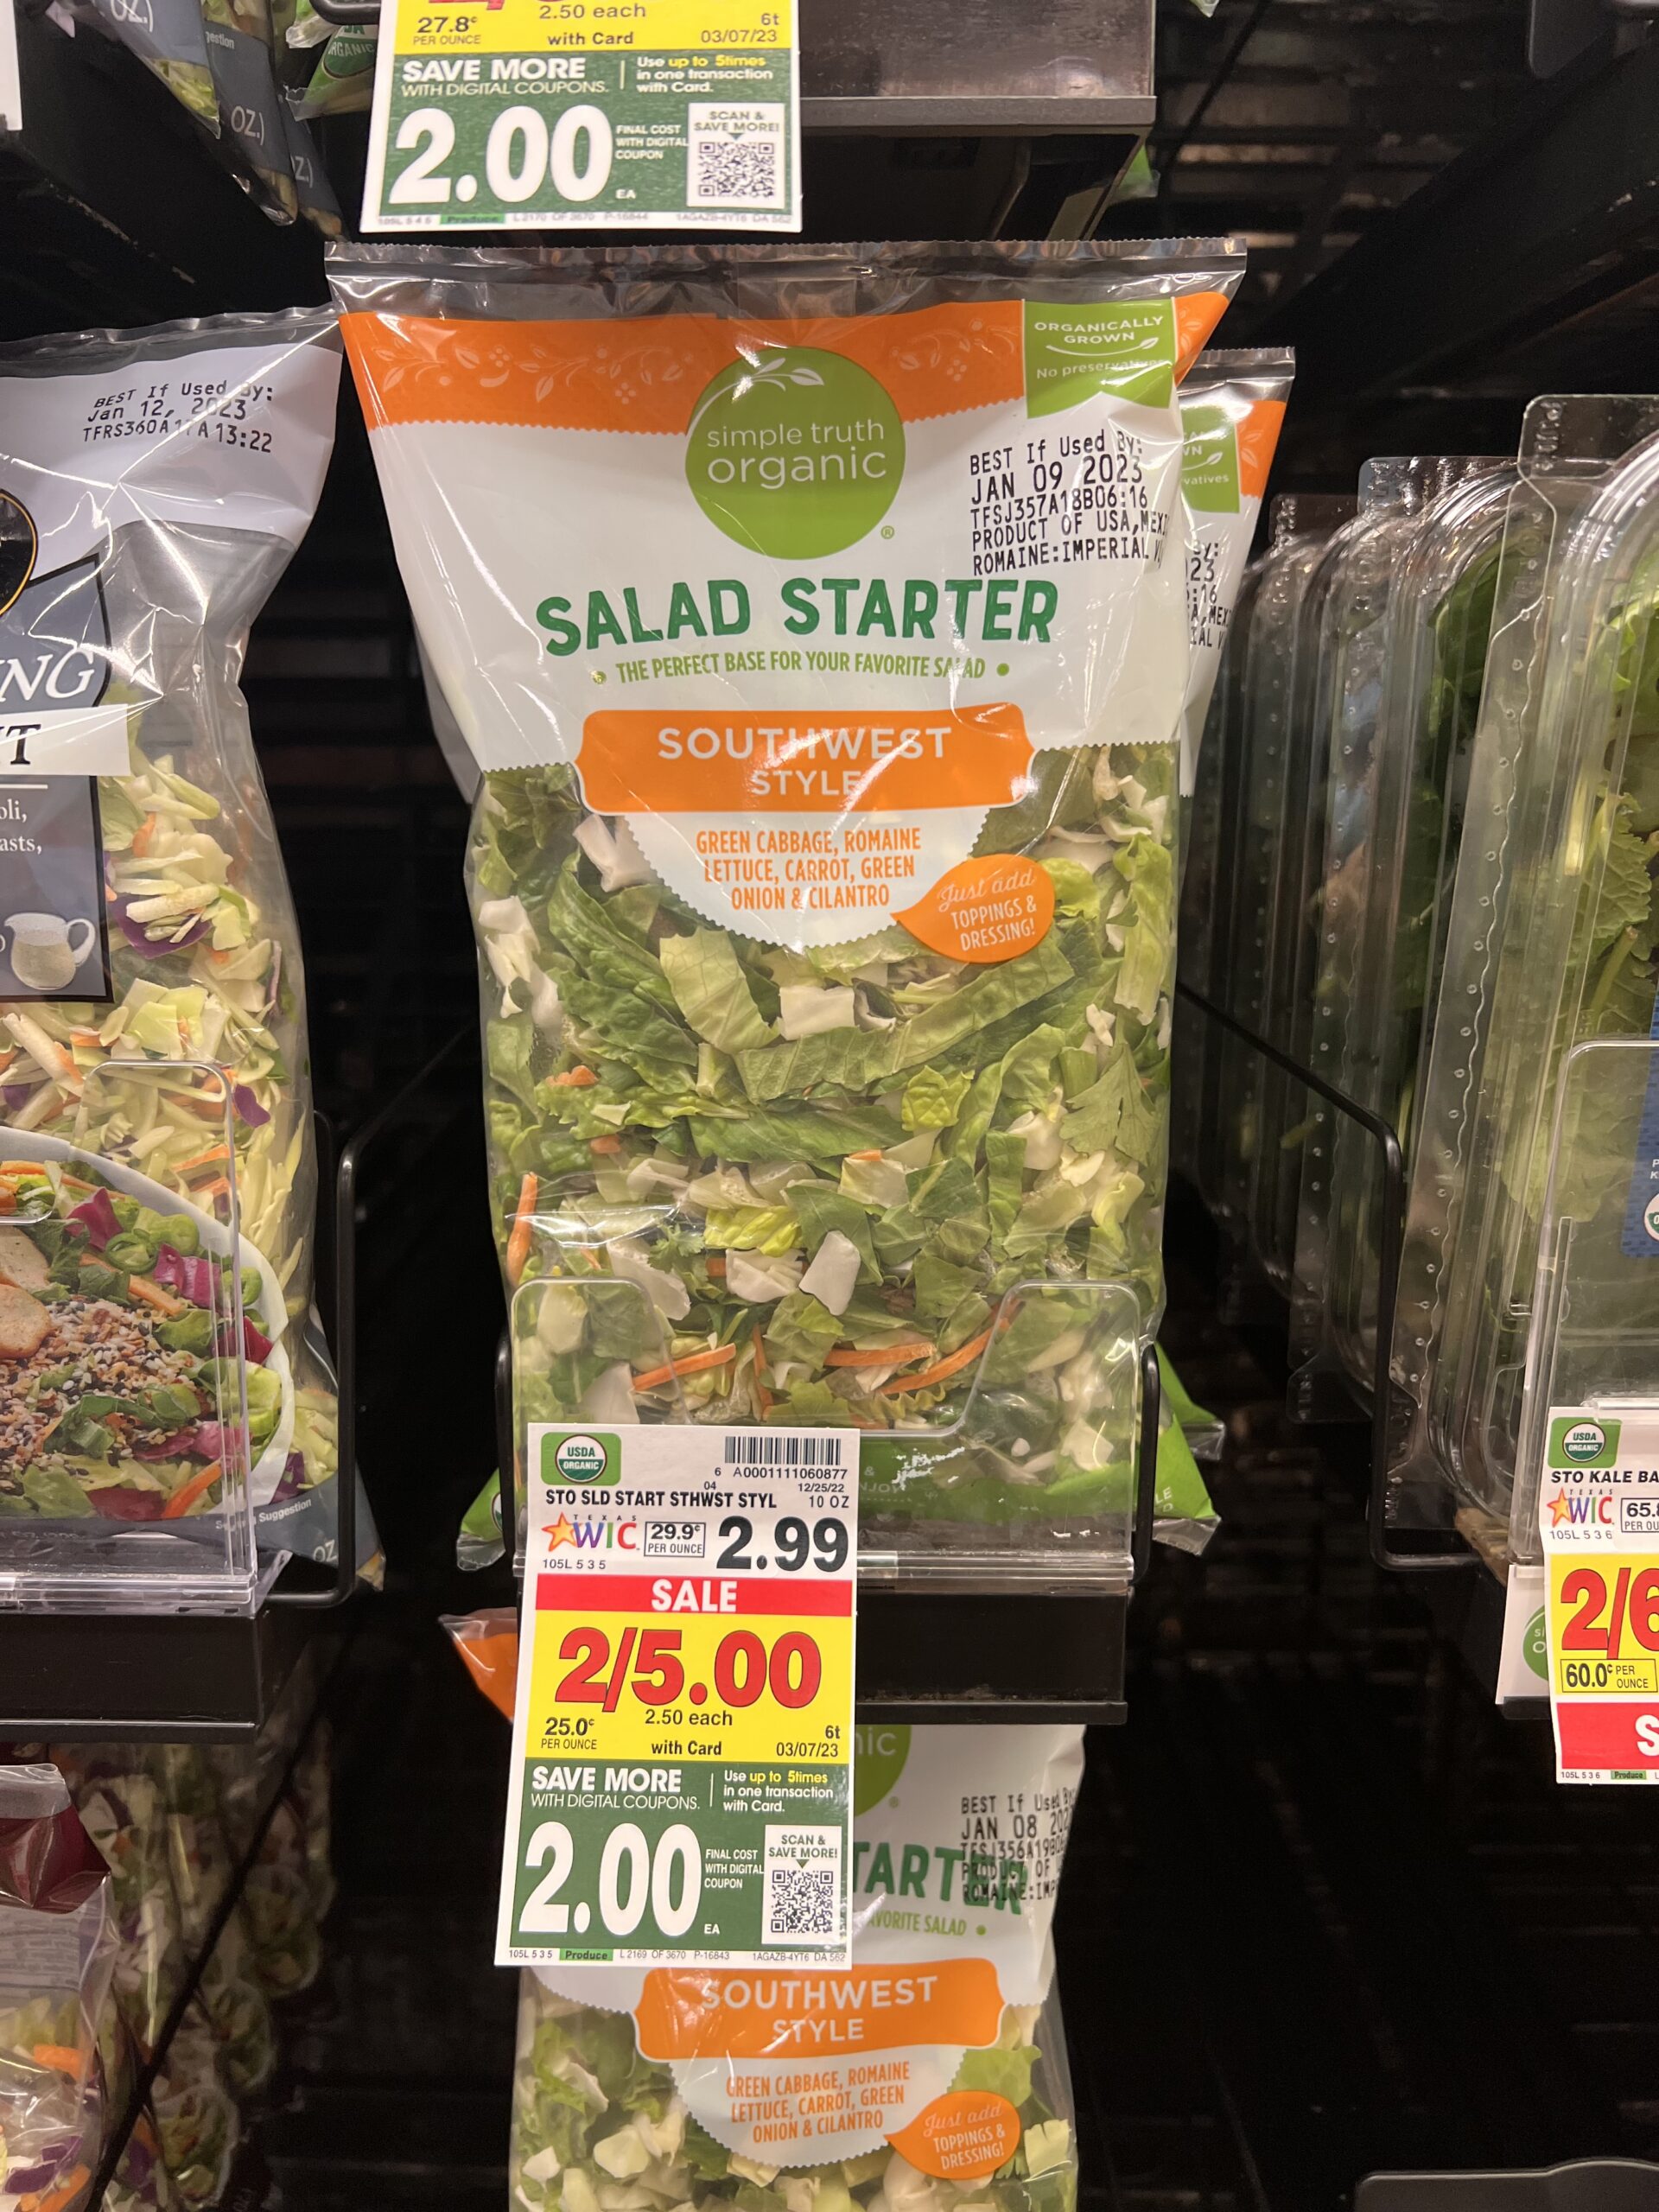 STO salad starter kroger shelf image 3